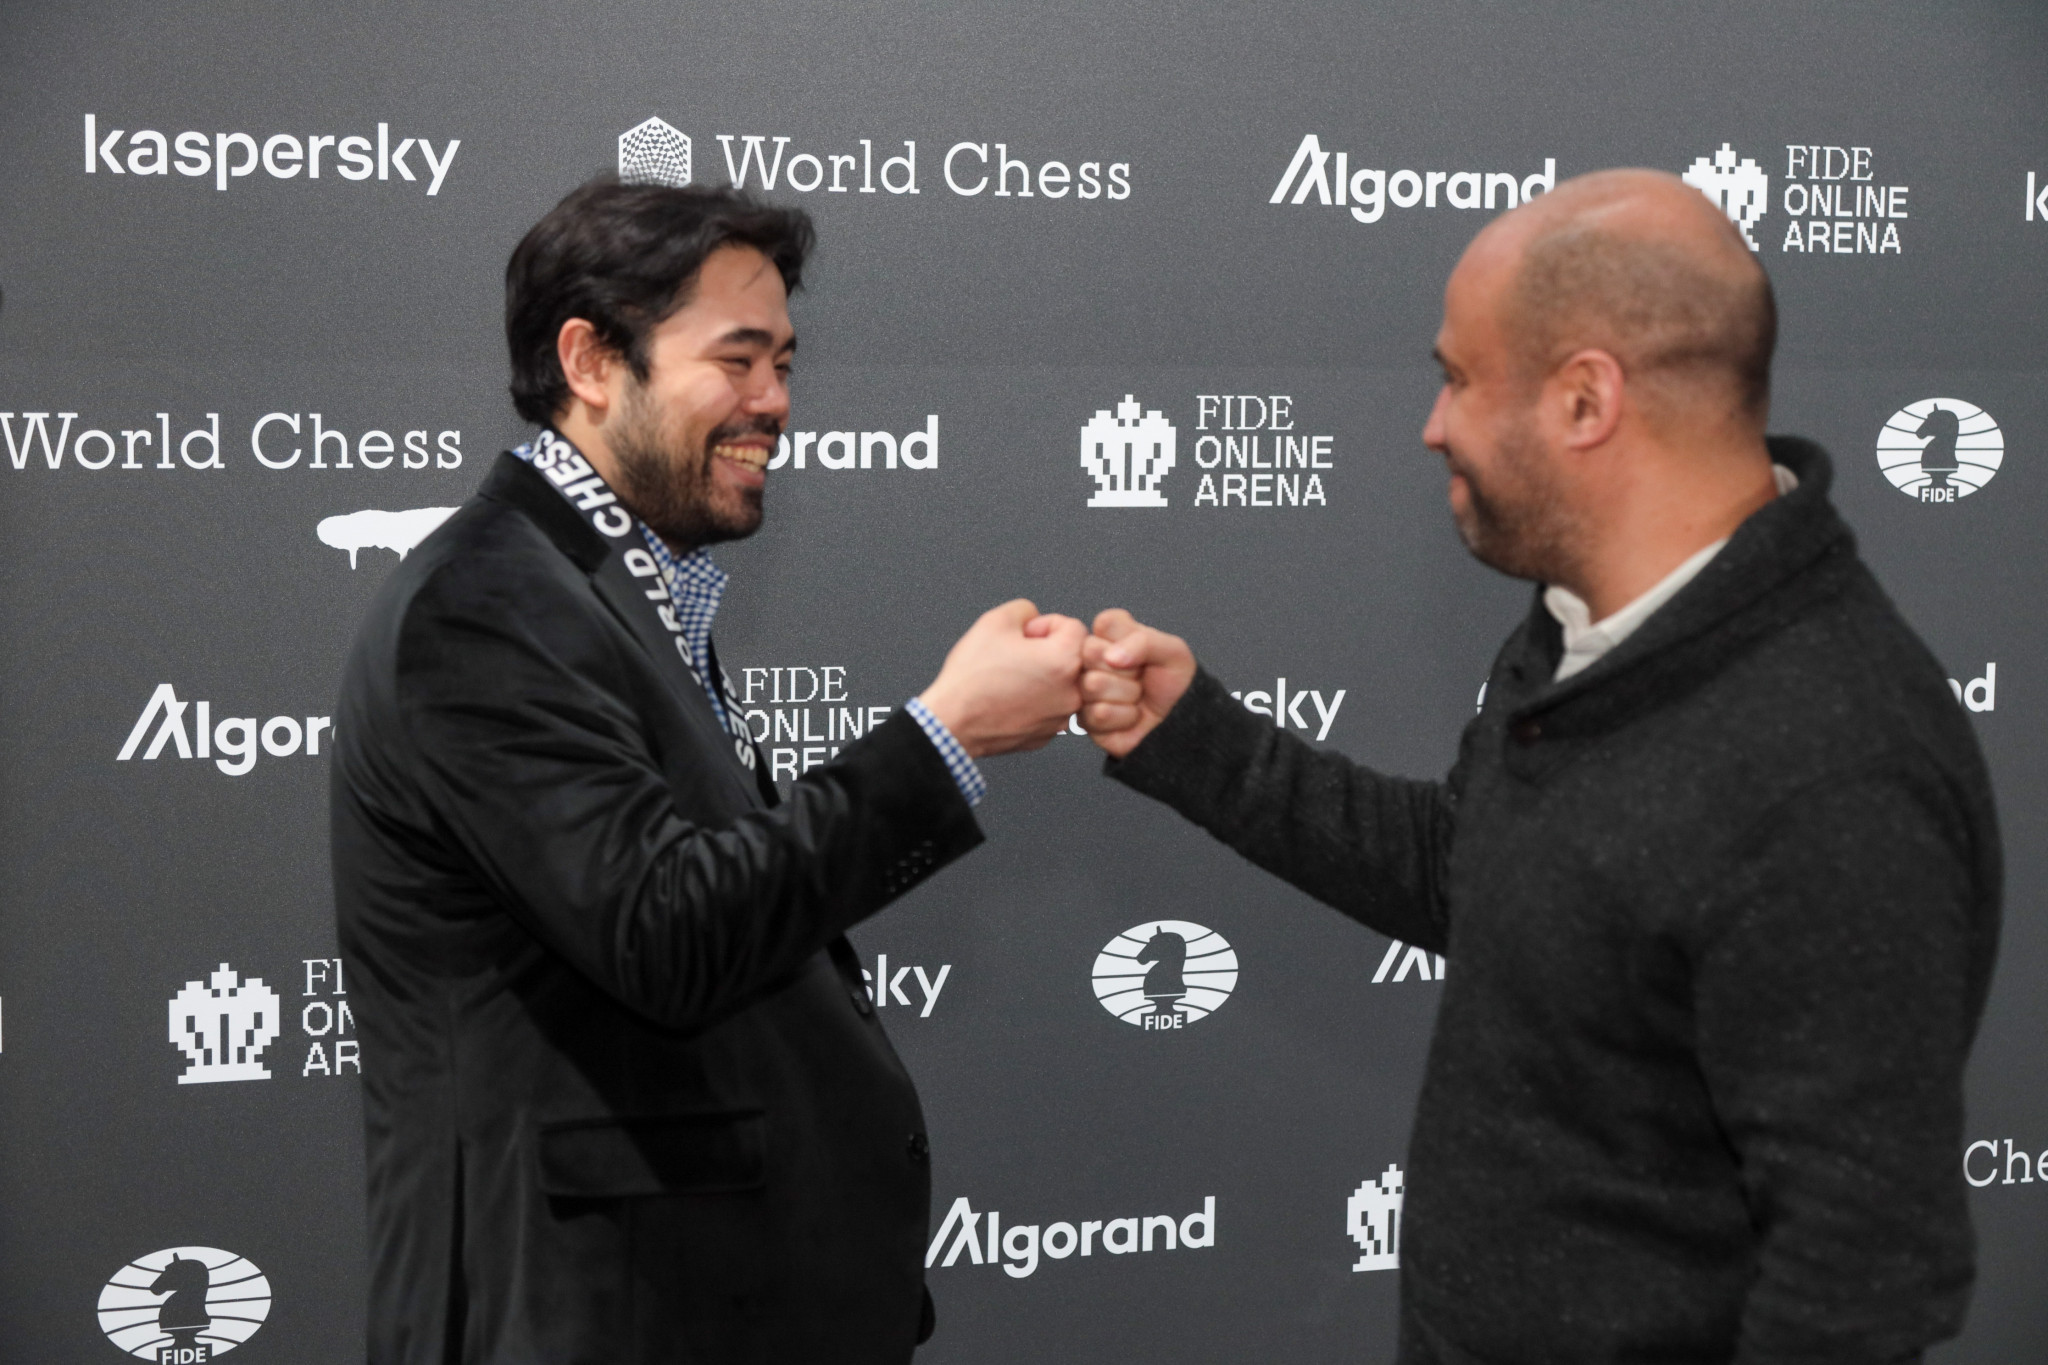 Nakamura beats Aronian in tiebreaks, wins Berlin Grand Prix